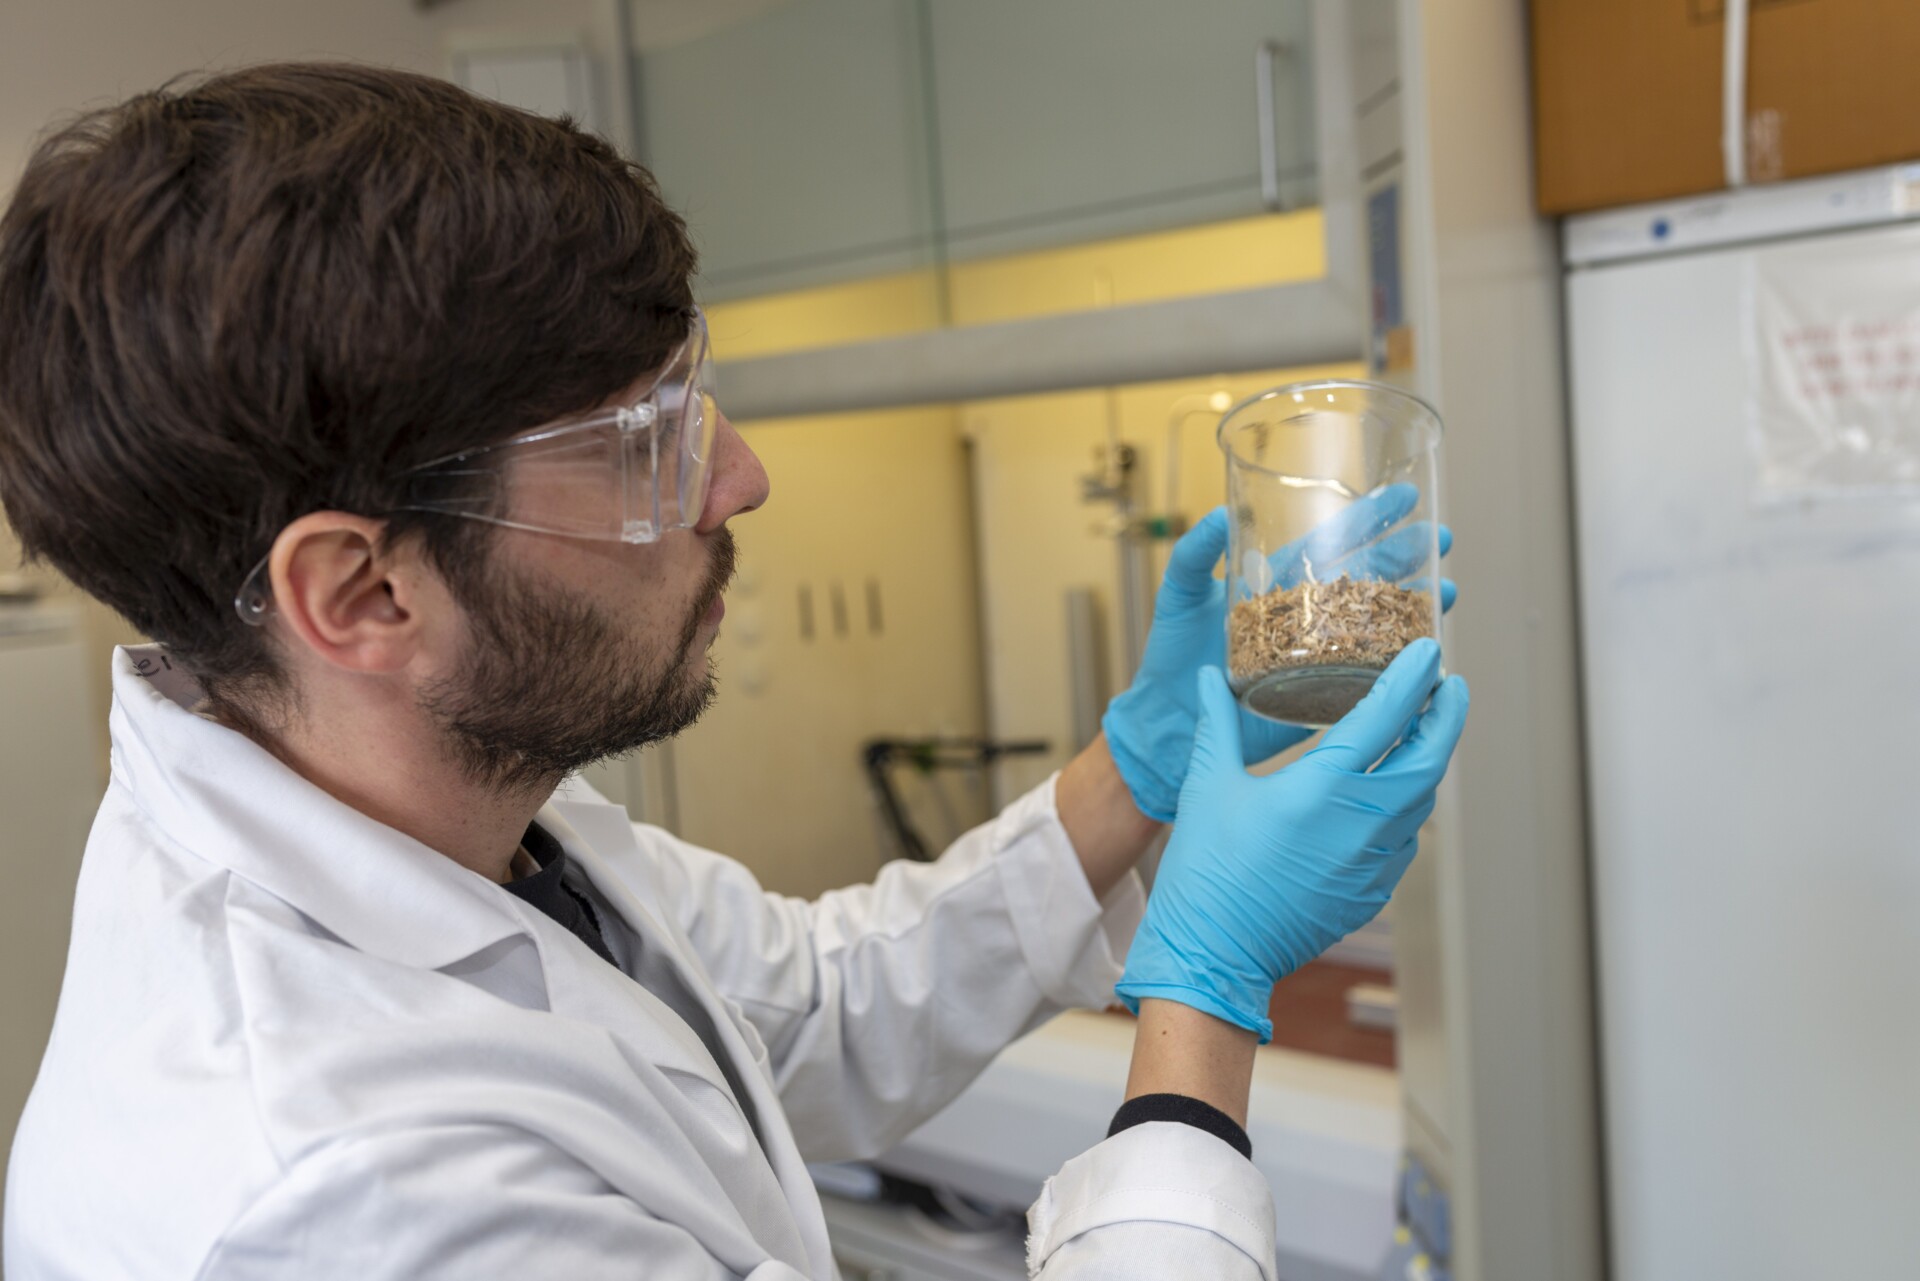 Arbeiten im Biokraftstofftechnikum, ein Wissenschaftler betrachtet ein Glas mit Pellets